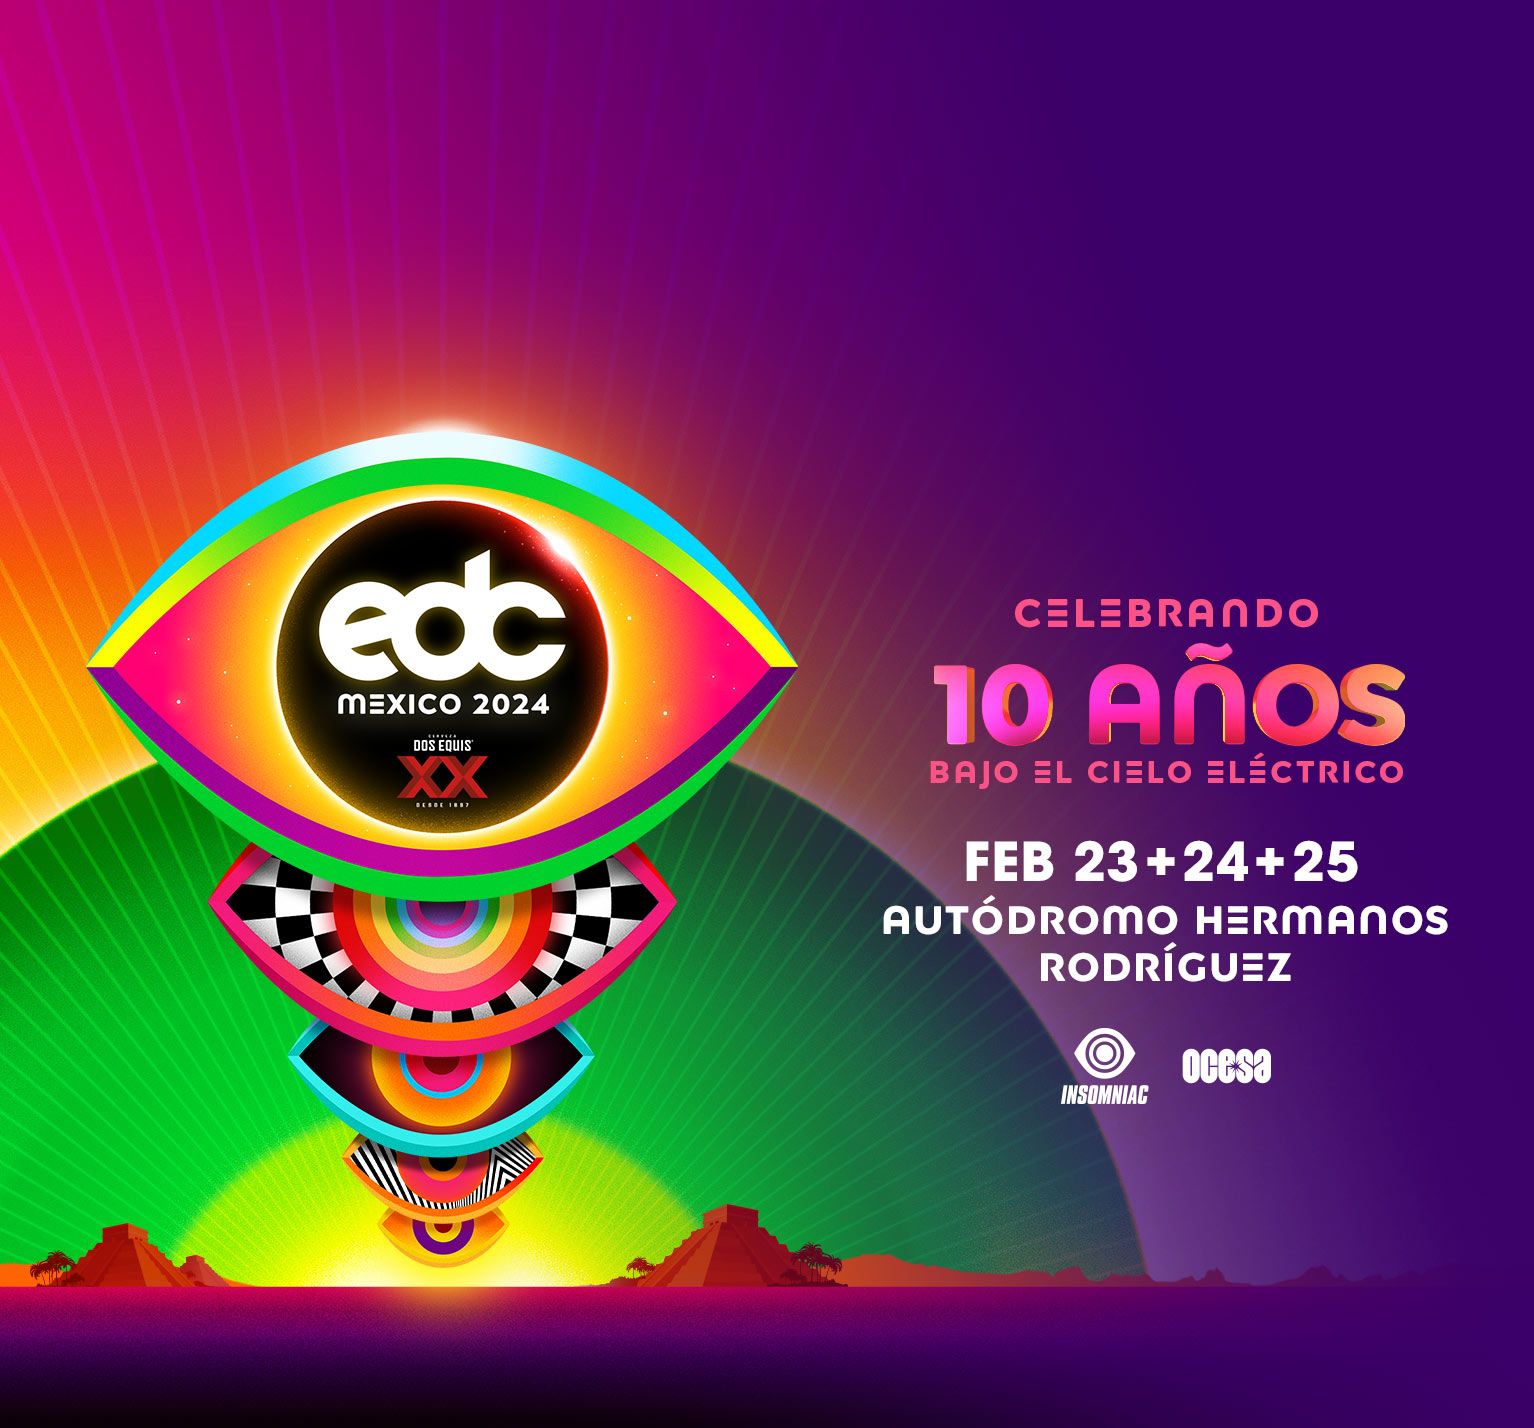 EDC Mexico 2325 Febrero, 2024 Mexico City